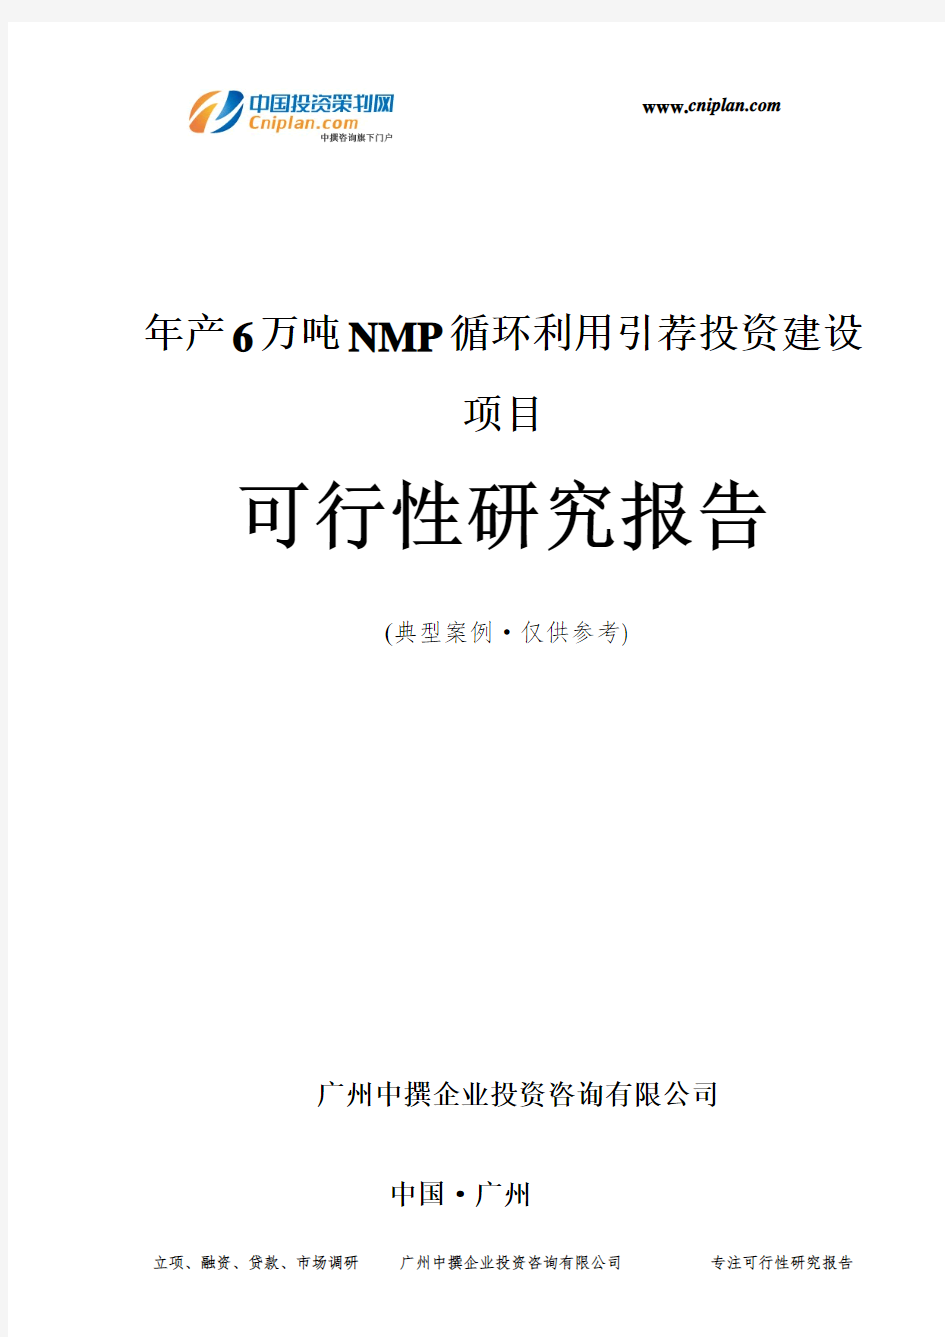 年产6万吨NMP循环利用引荐投资建设项目可行性研究报告-广州中撰咨询